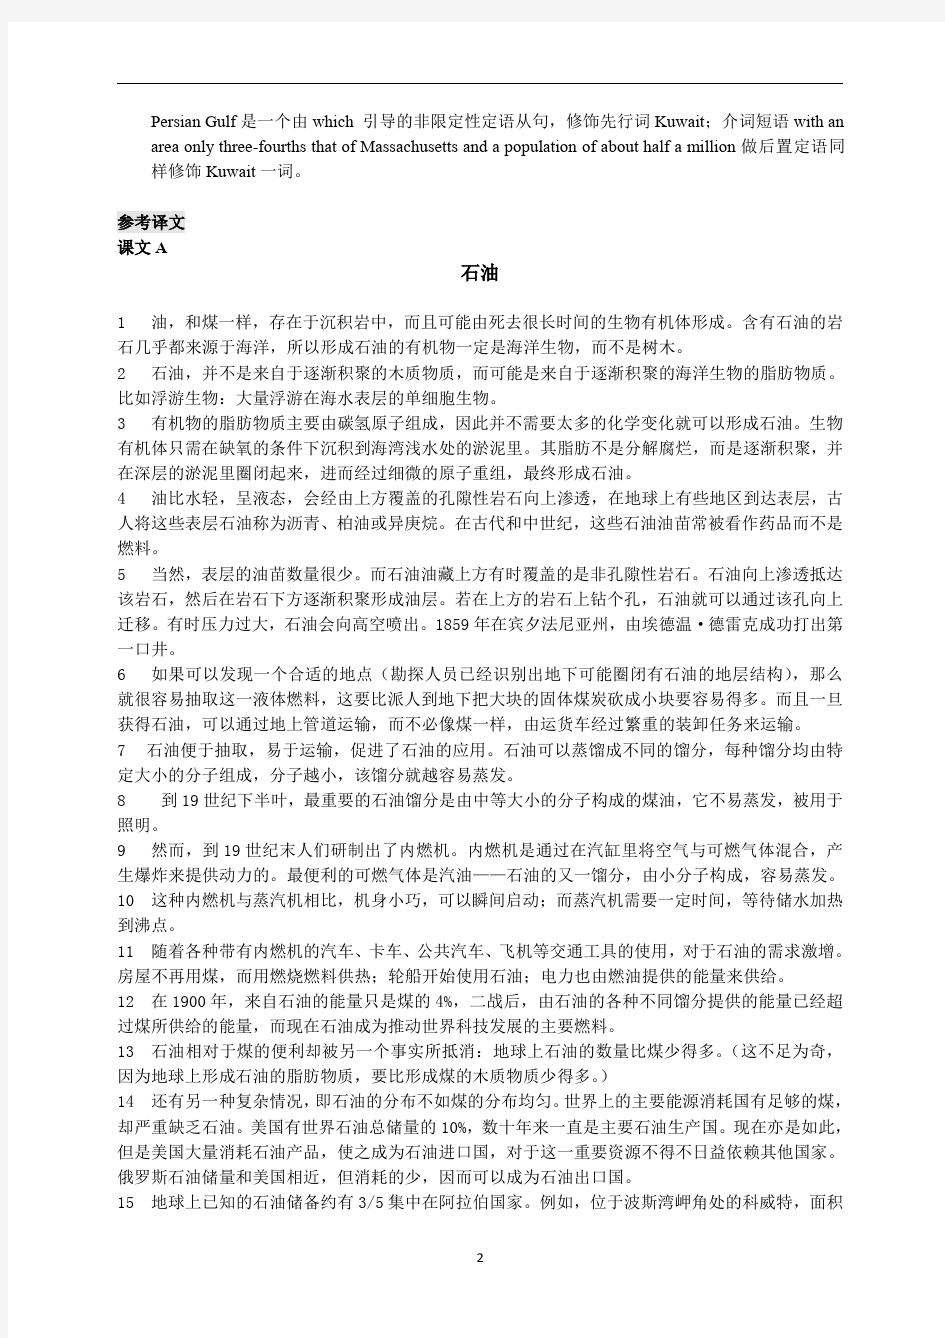 中国石油大学科技英语综合教程编写-教参(含课后答案)修改